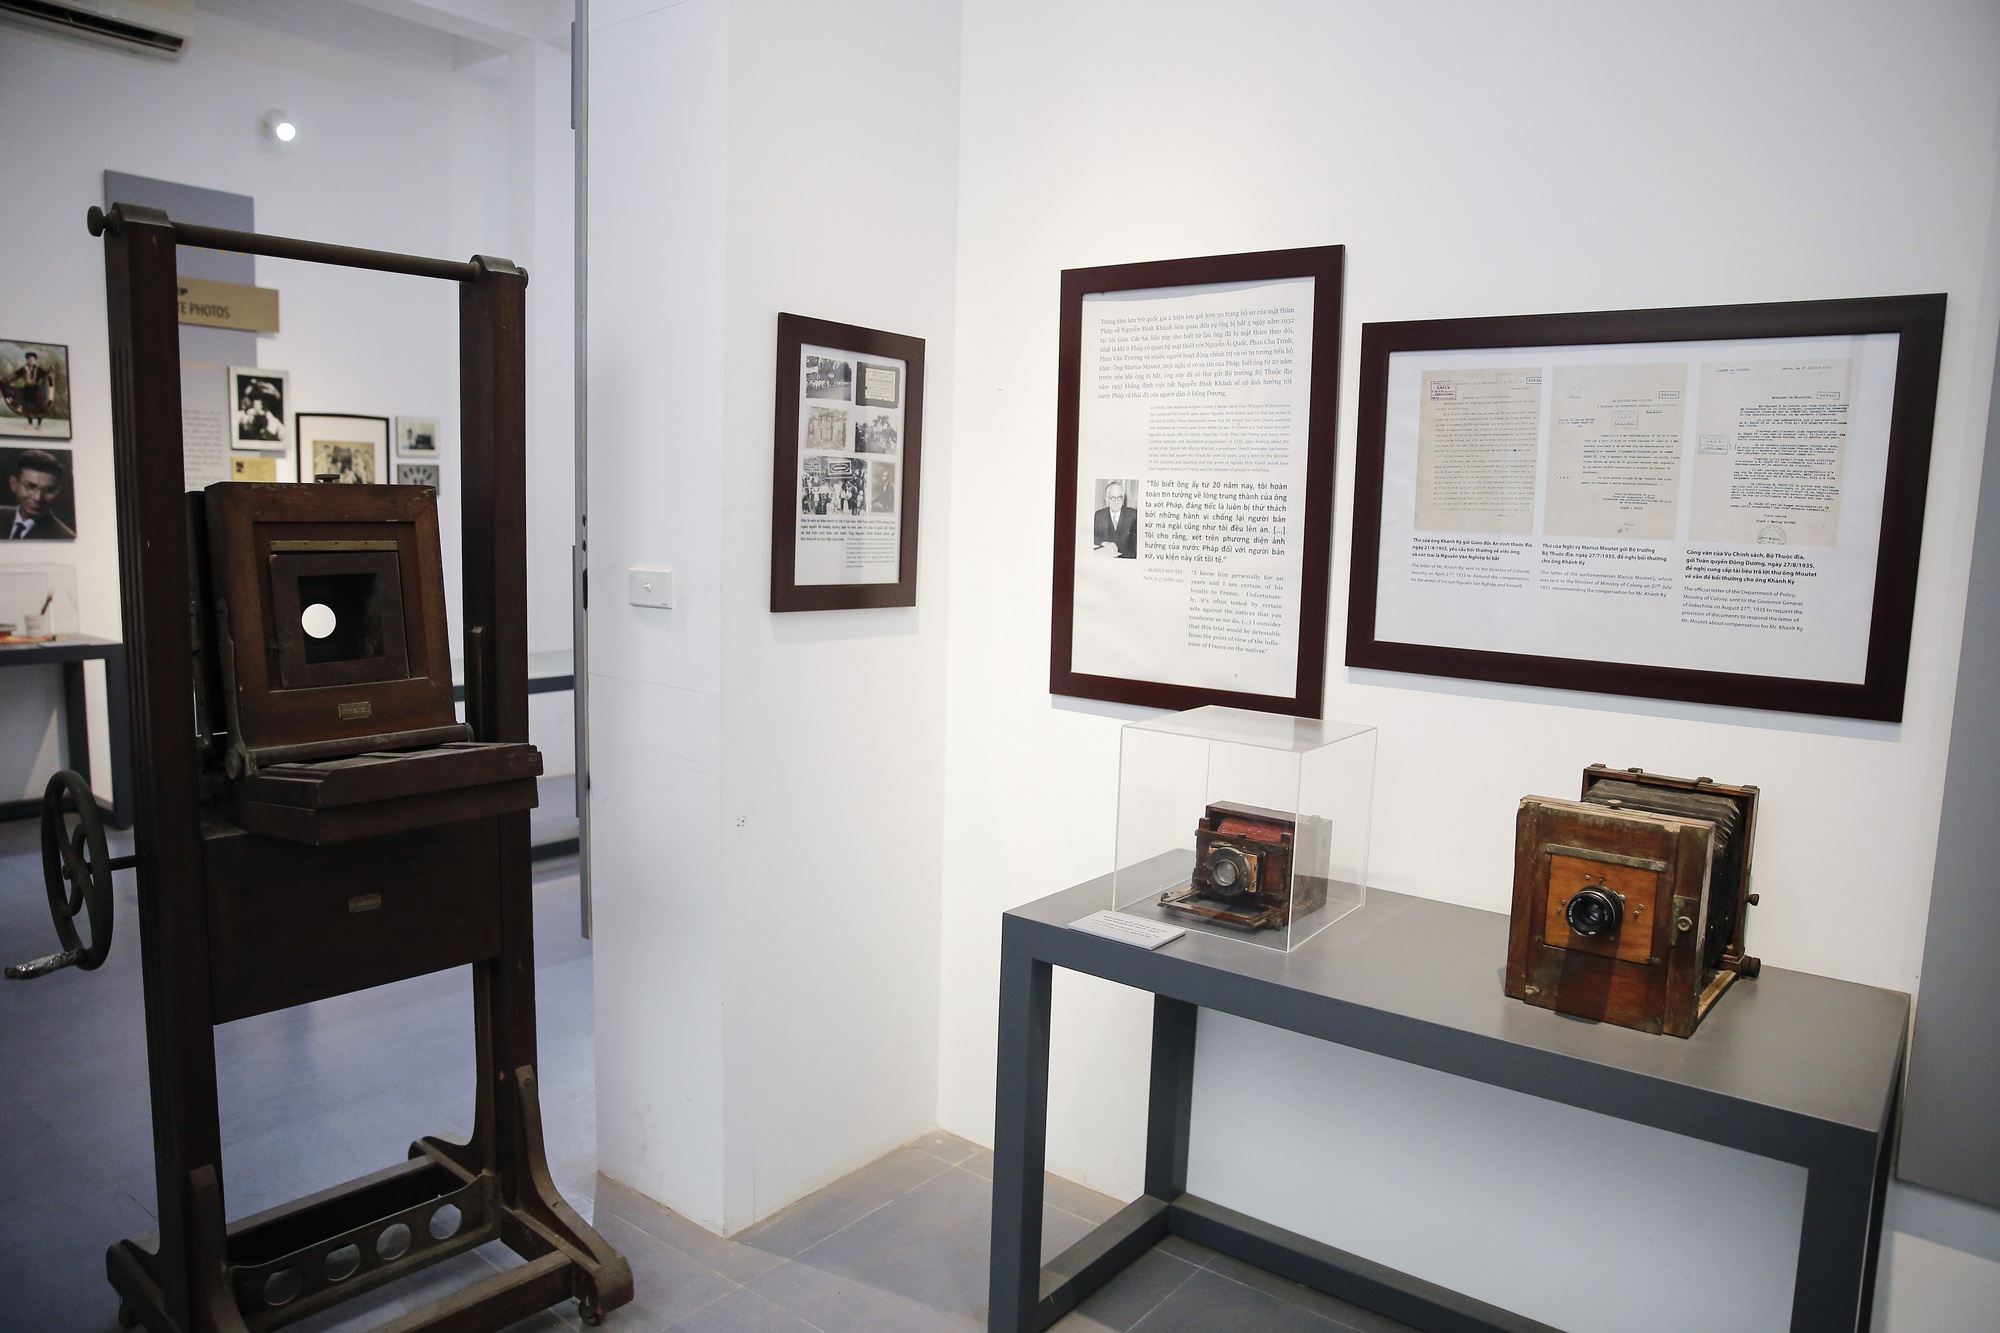 Khám phá bảo tàng nhiếp ảnh đầu tiên tại Hà Nội do dân làng góp tiền xây dựng - Ảnh 4.